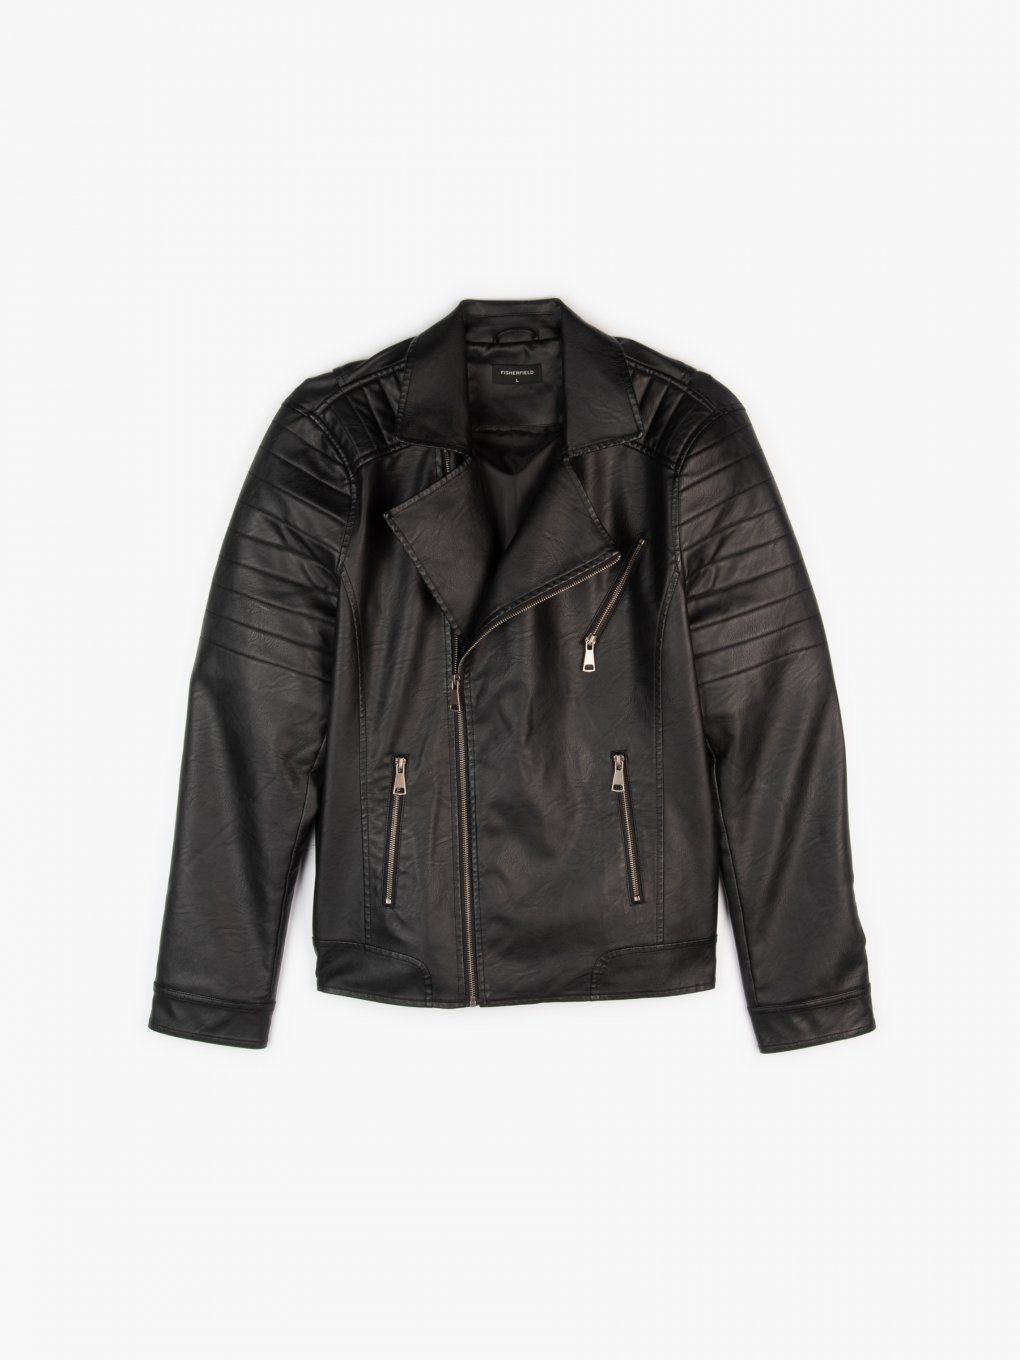 6 Boys MSRP $75 LRG Faux Leather Moto Bomber Jacket Black Sizes 5 